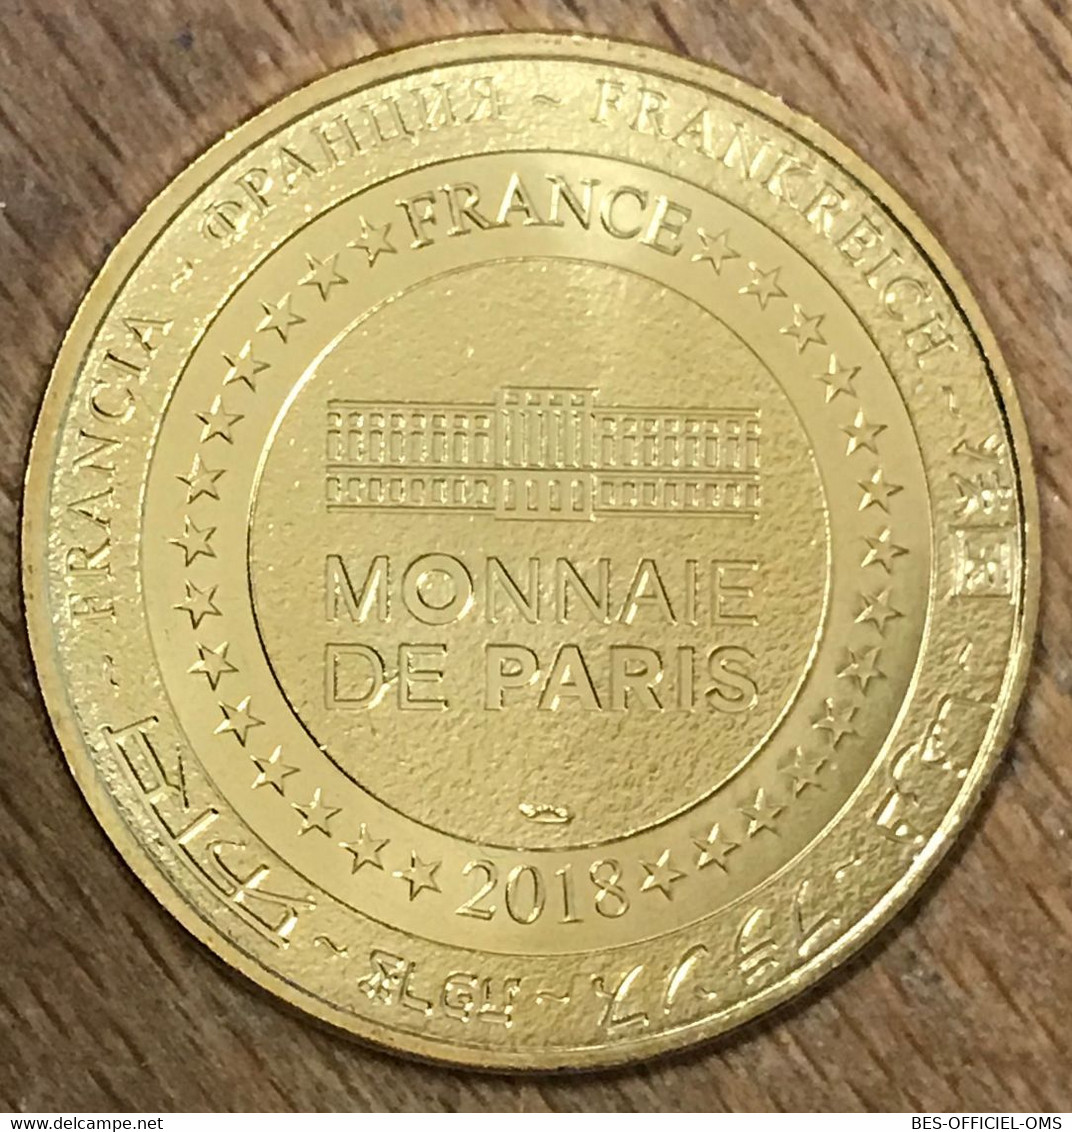 89 AUXERRE ABBAYE SAINT-GERMAIN 1600 ANS MDP 2018 MÉDAILLE MONNAIE DE PARIS JETON TOURISTIQUE MEDALS COINS TOKENS - 2018